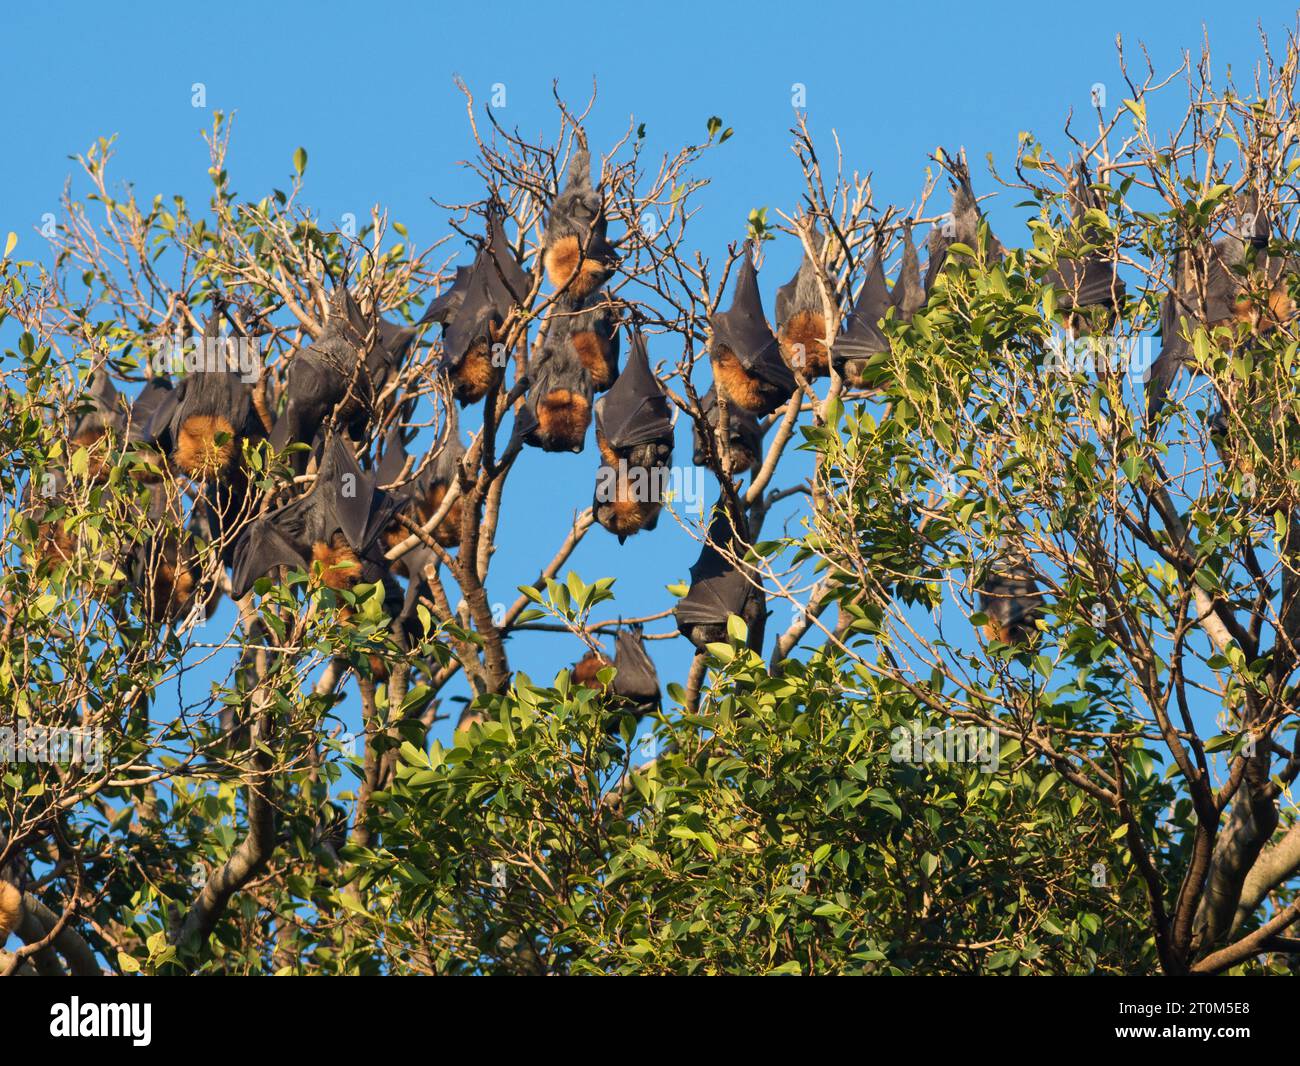 Le volpi volanti a testa grigia sono appese a un albero in una giornata di sole nei parchi di Adelaide, in Australia meridionale. Foto Stock